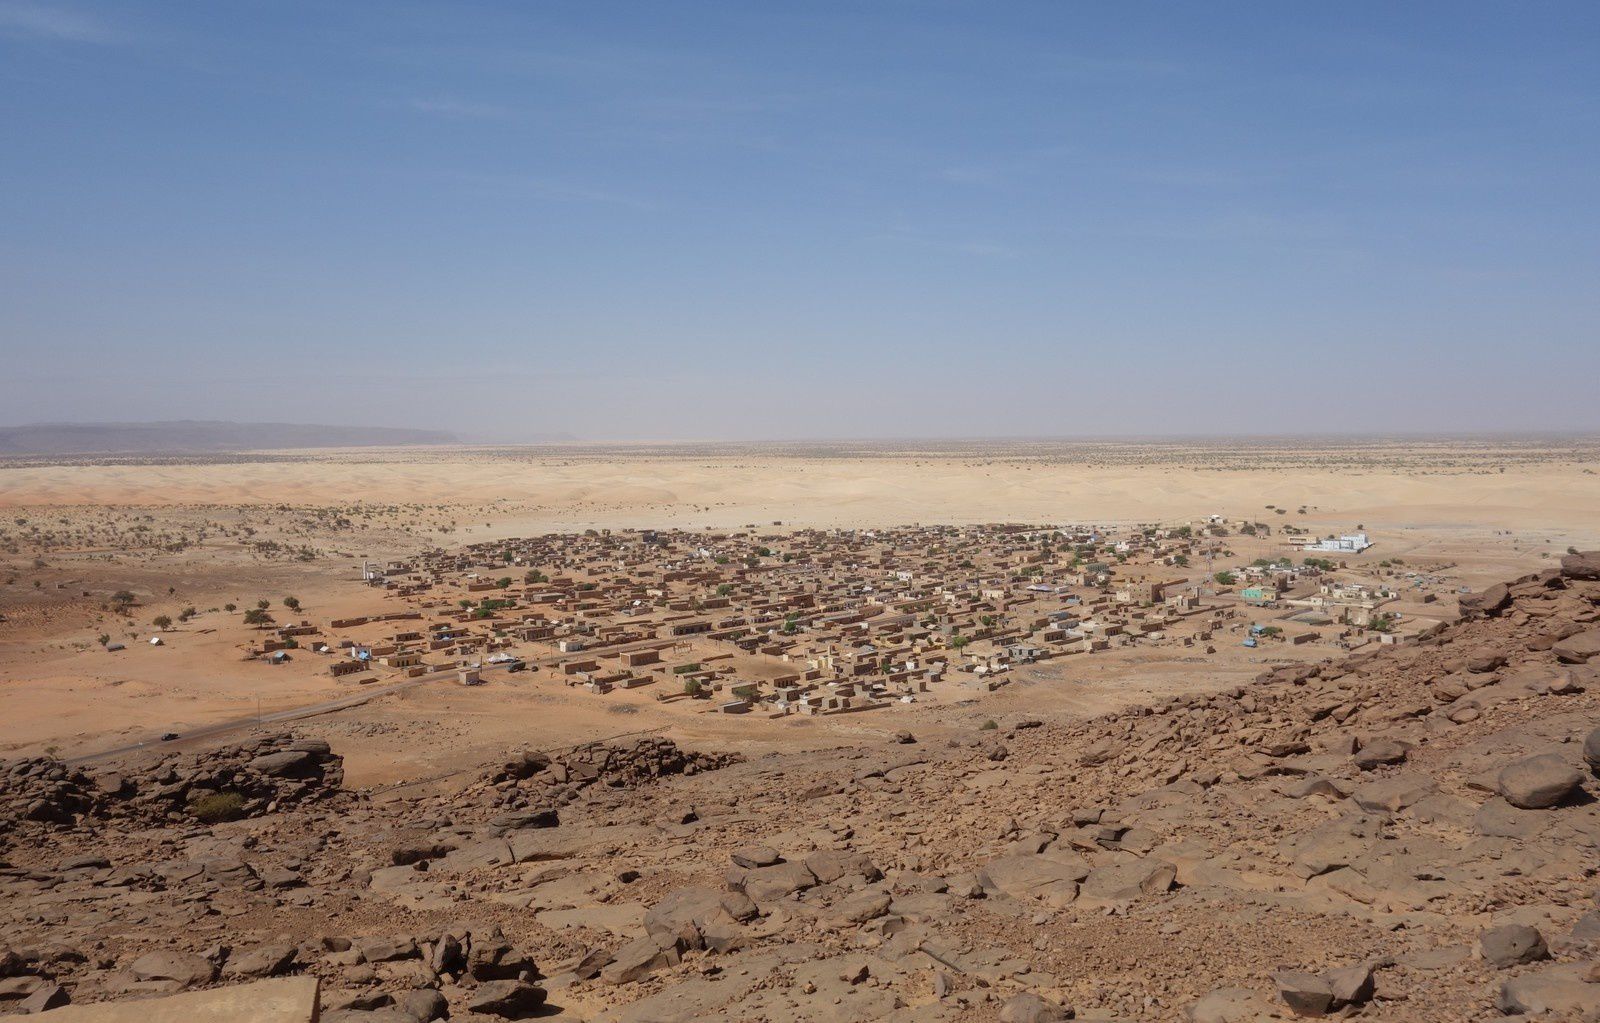 Forte de plus d'un million de km², la Mauritanie est aussi fragile de la configuration complexe de son territoire. Très peu densément peuplé (moins de 4,5 habitants au km²), avec un quart de sa population concentrée à Nouakchott (et à l'exception de Nouadhibou, aucune autre ville ne dépassant 60 000 habitants), le pays possède de vastes espaces désertiques, qui accroissent les difficultés de liaison et de désenclavement. Ici, un village de la région du Tagant, dans le centre du pays. En outre, une telle situation géographique rend les frontières poreuses, difficilement contrôlables.